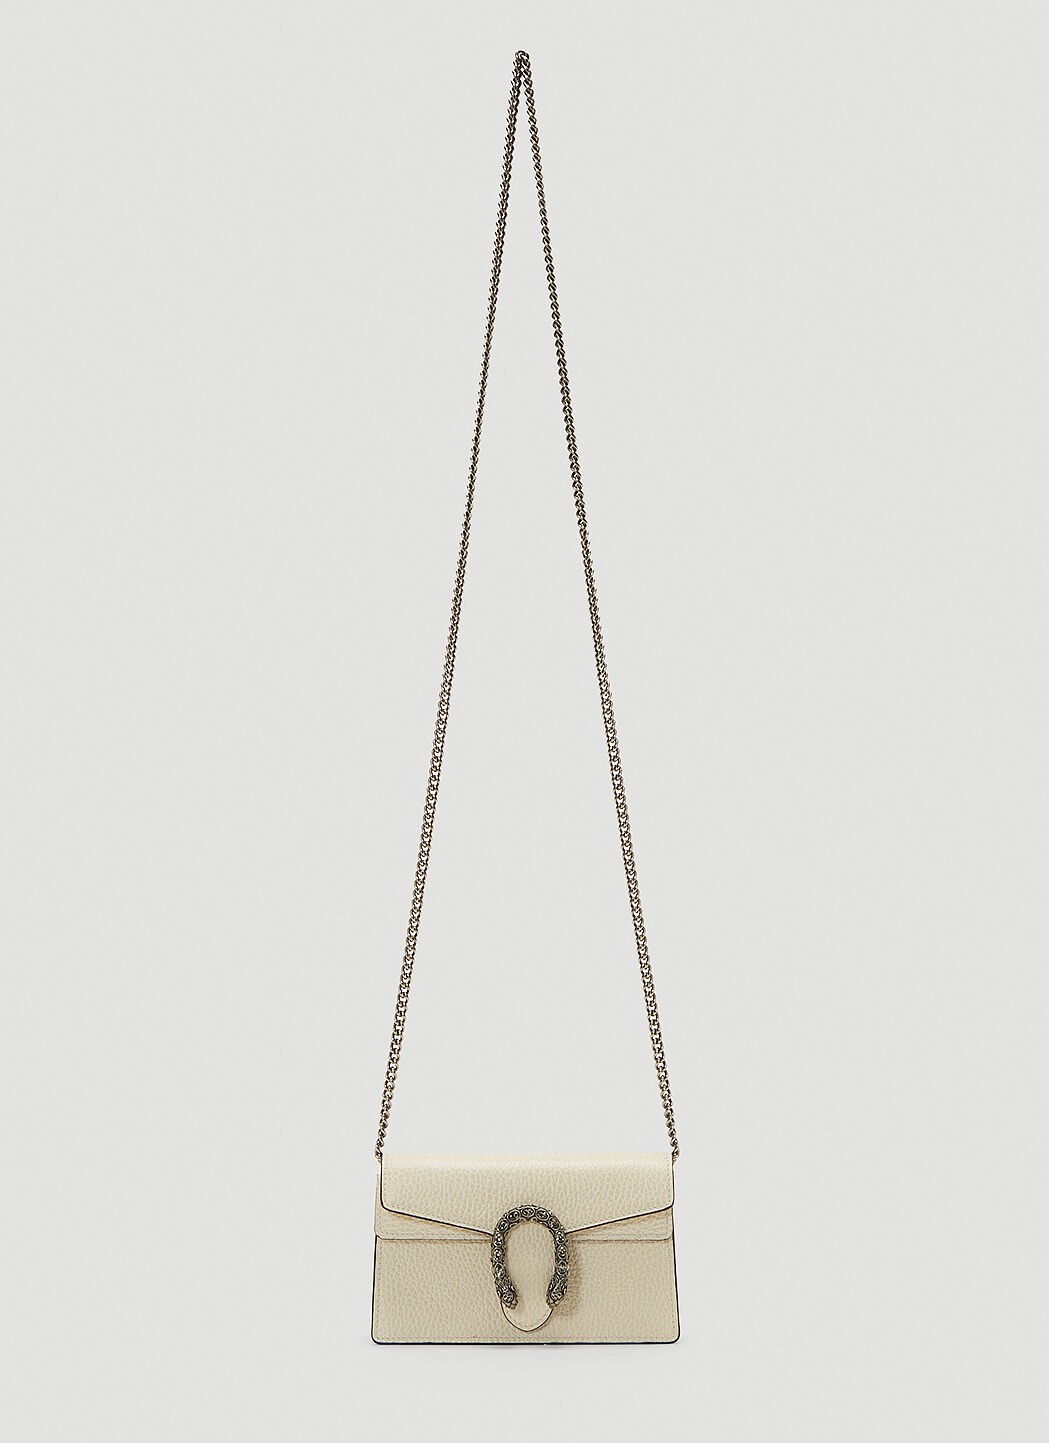 Bottega Veneta Dionysus Mini Shoulder Bag 黑 bov0142013